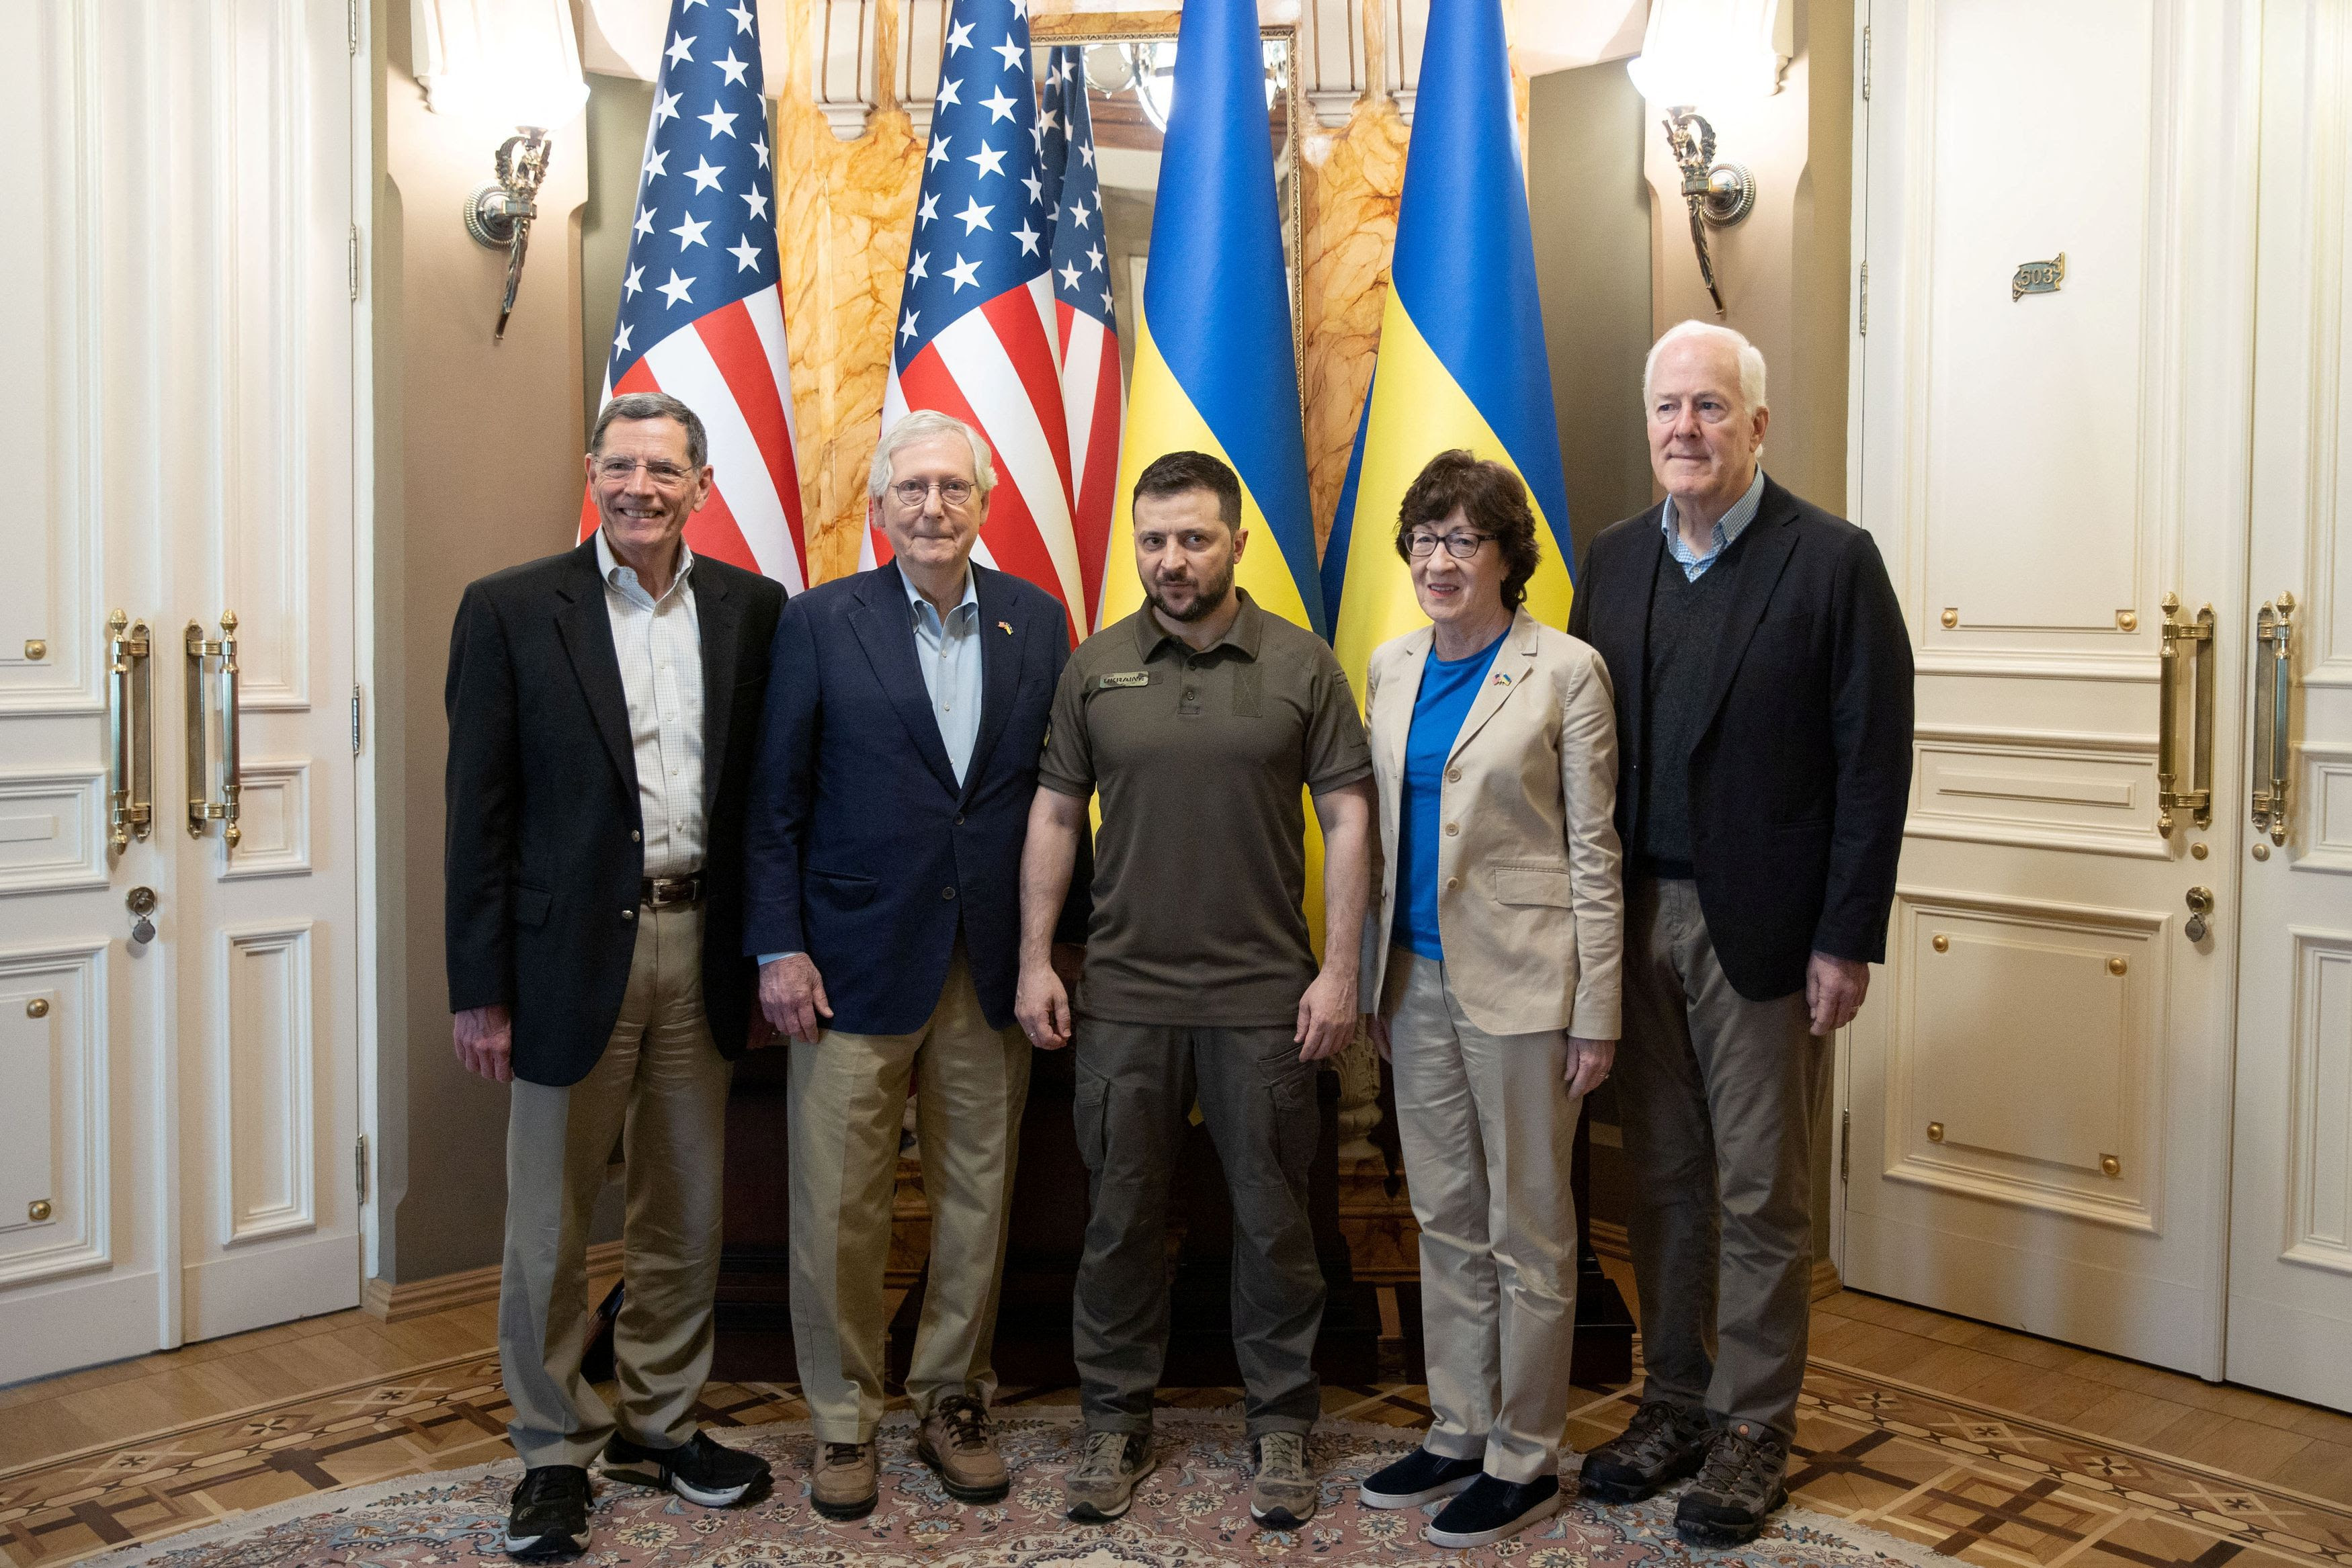 Mitch McConnell leads Senate GOP delegation in surprise visit Ukraine, meets President Zelensky